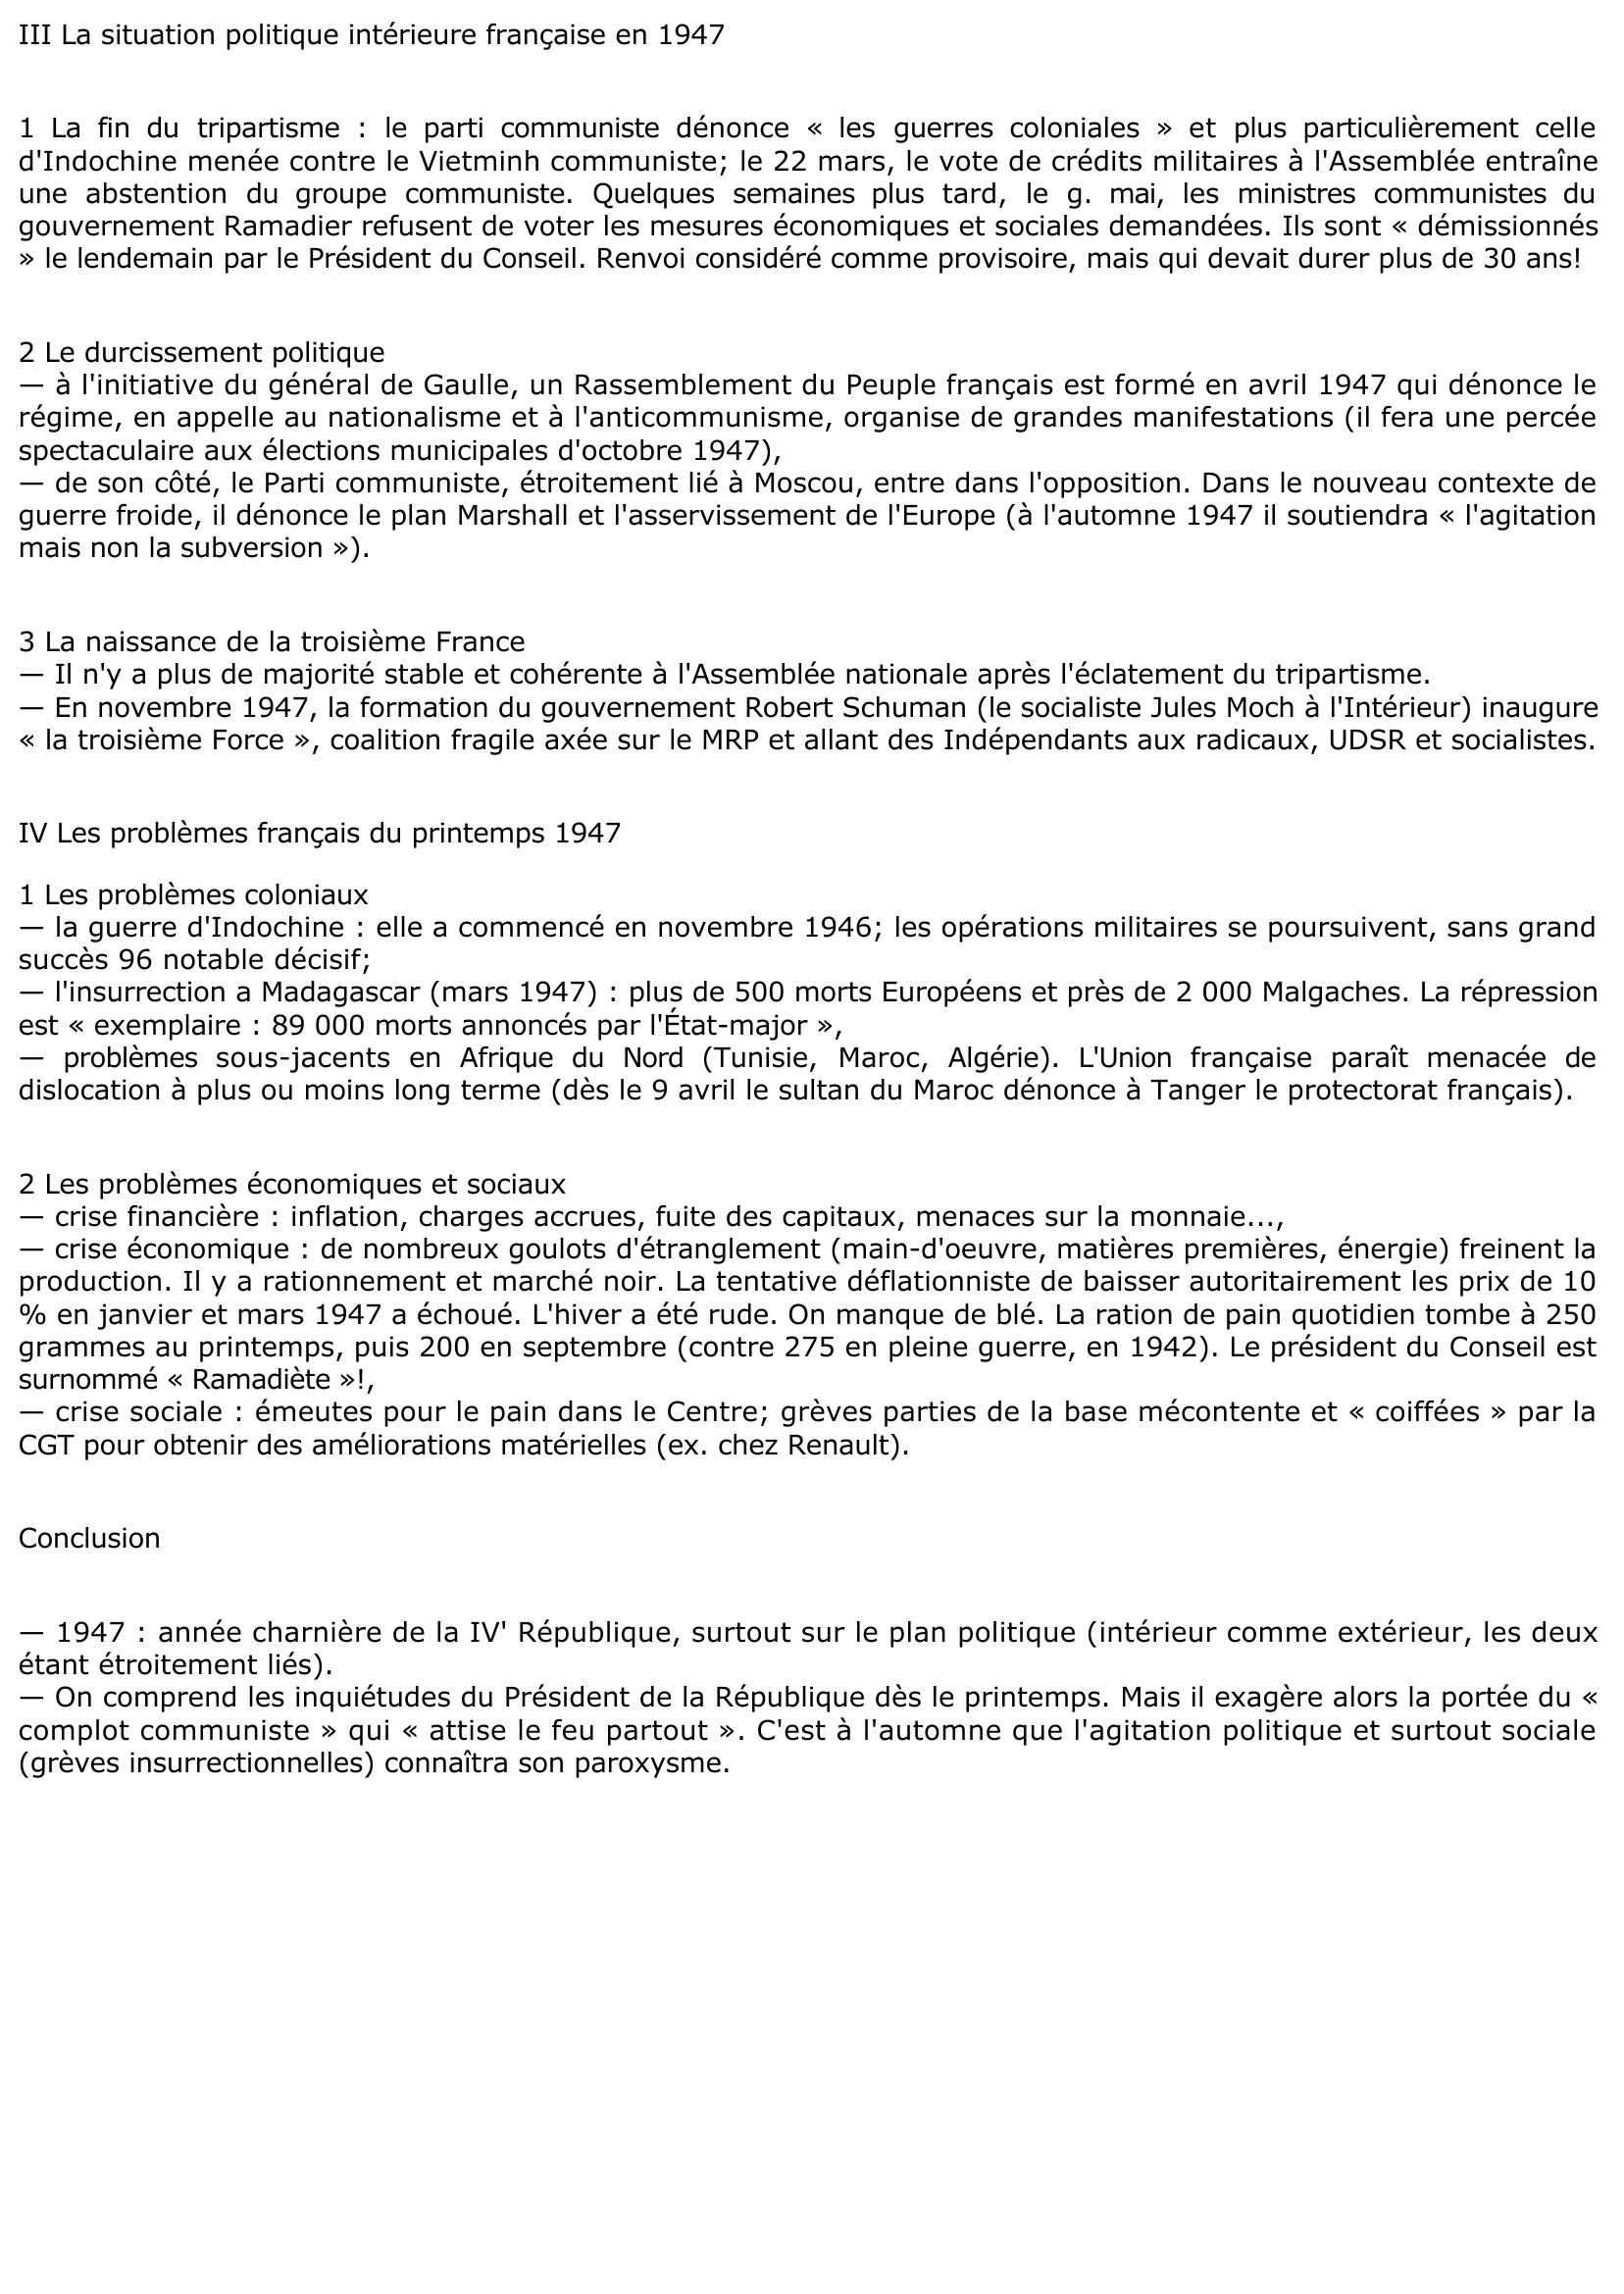 Prévisualisation du document Extrait du Journal du Septennat de Vincent Auriol, Président de la République 1946-1953 la situation en France en juin 1947 (histoire)